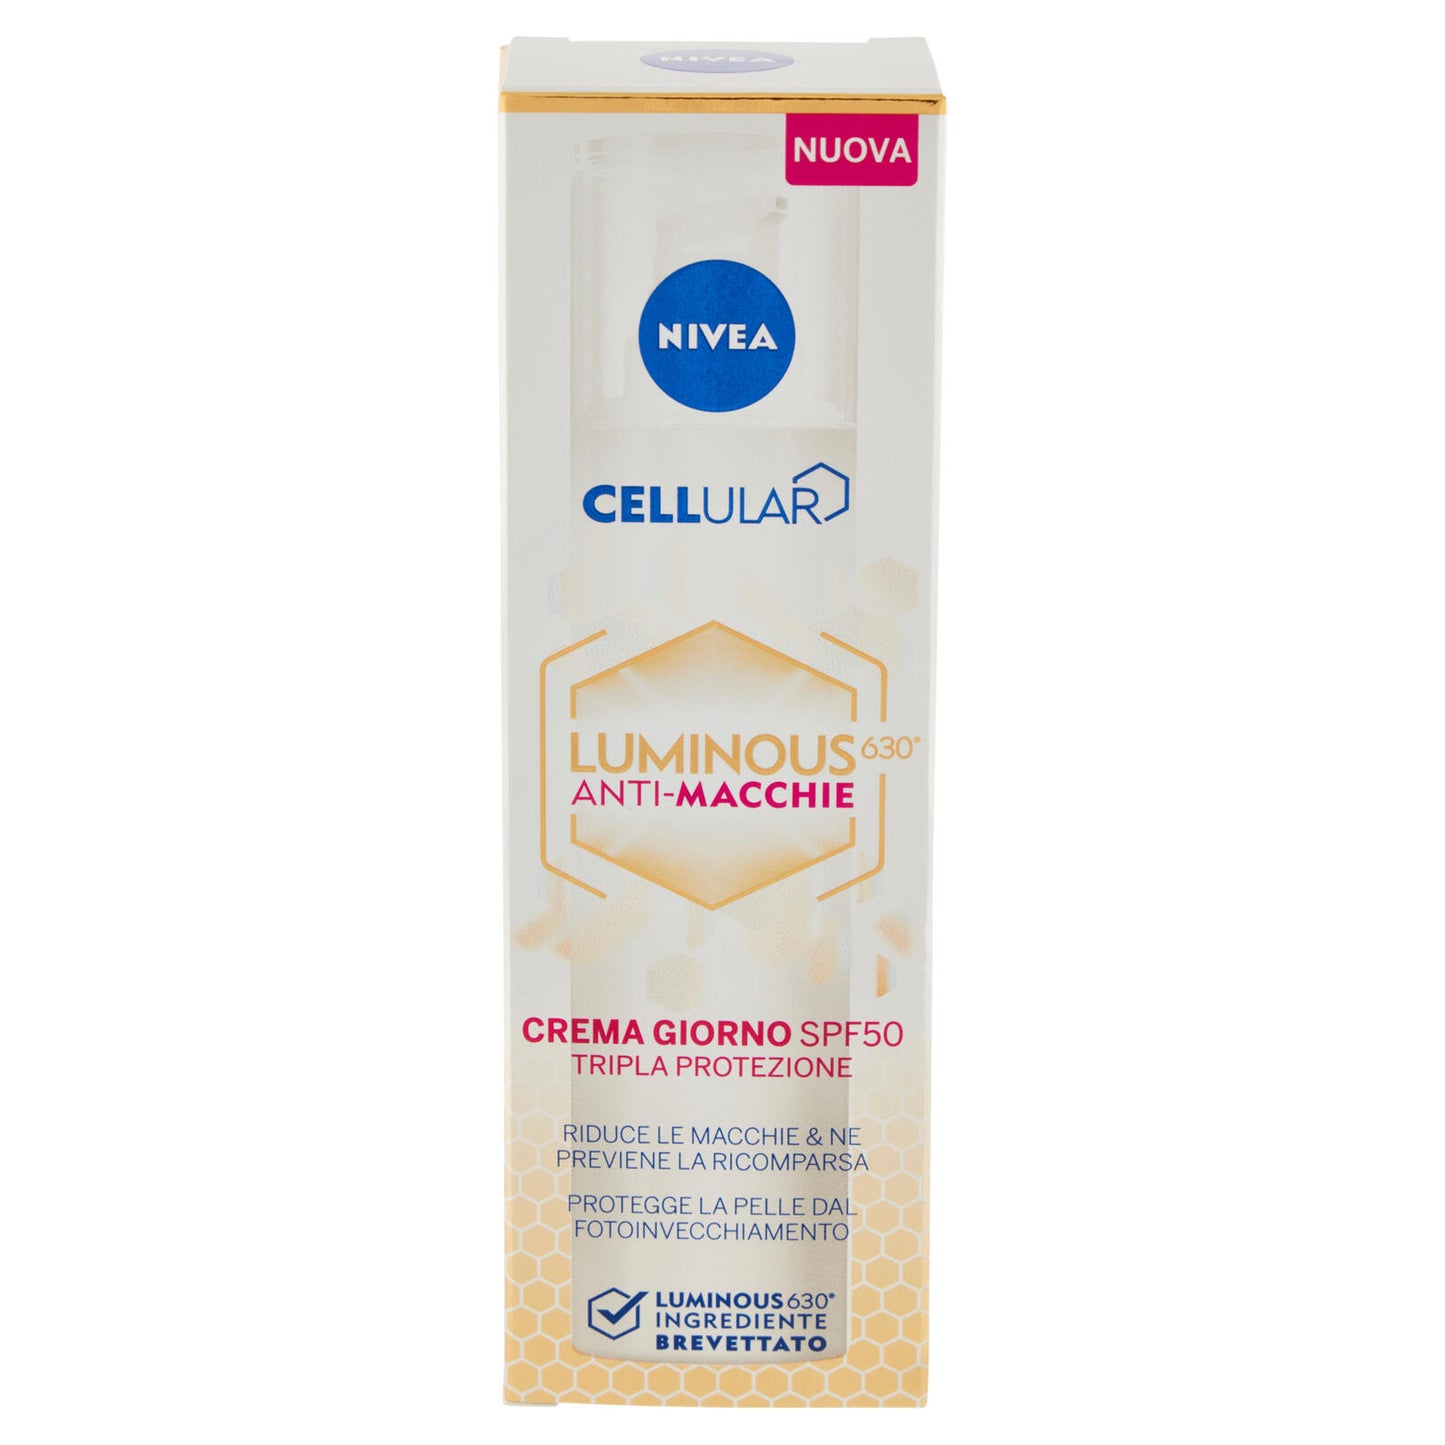 Nivea Cellular Luminous630 Anti-Macchie Crema Giorno SPF50 Tripla Protezione 40 ml